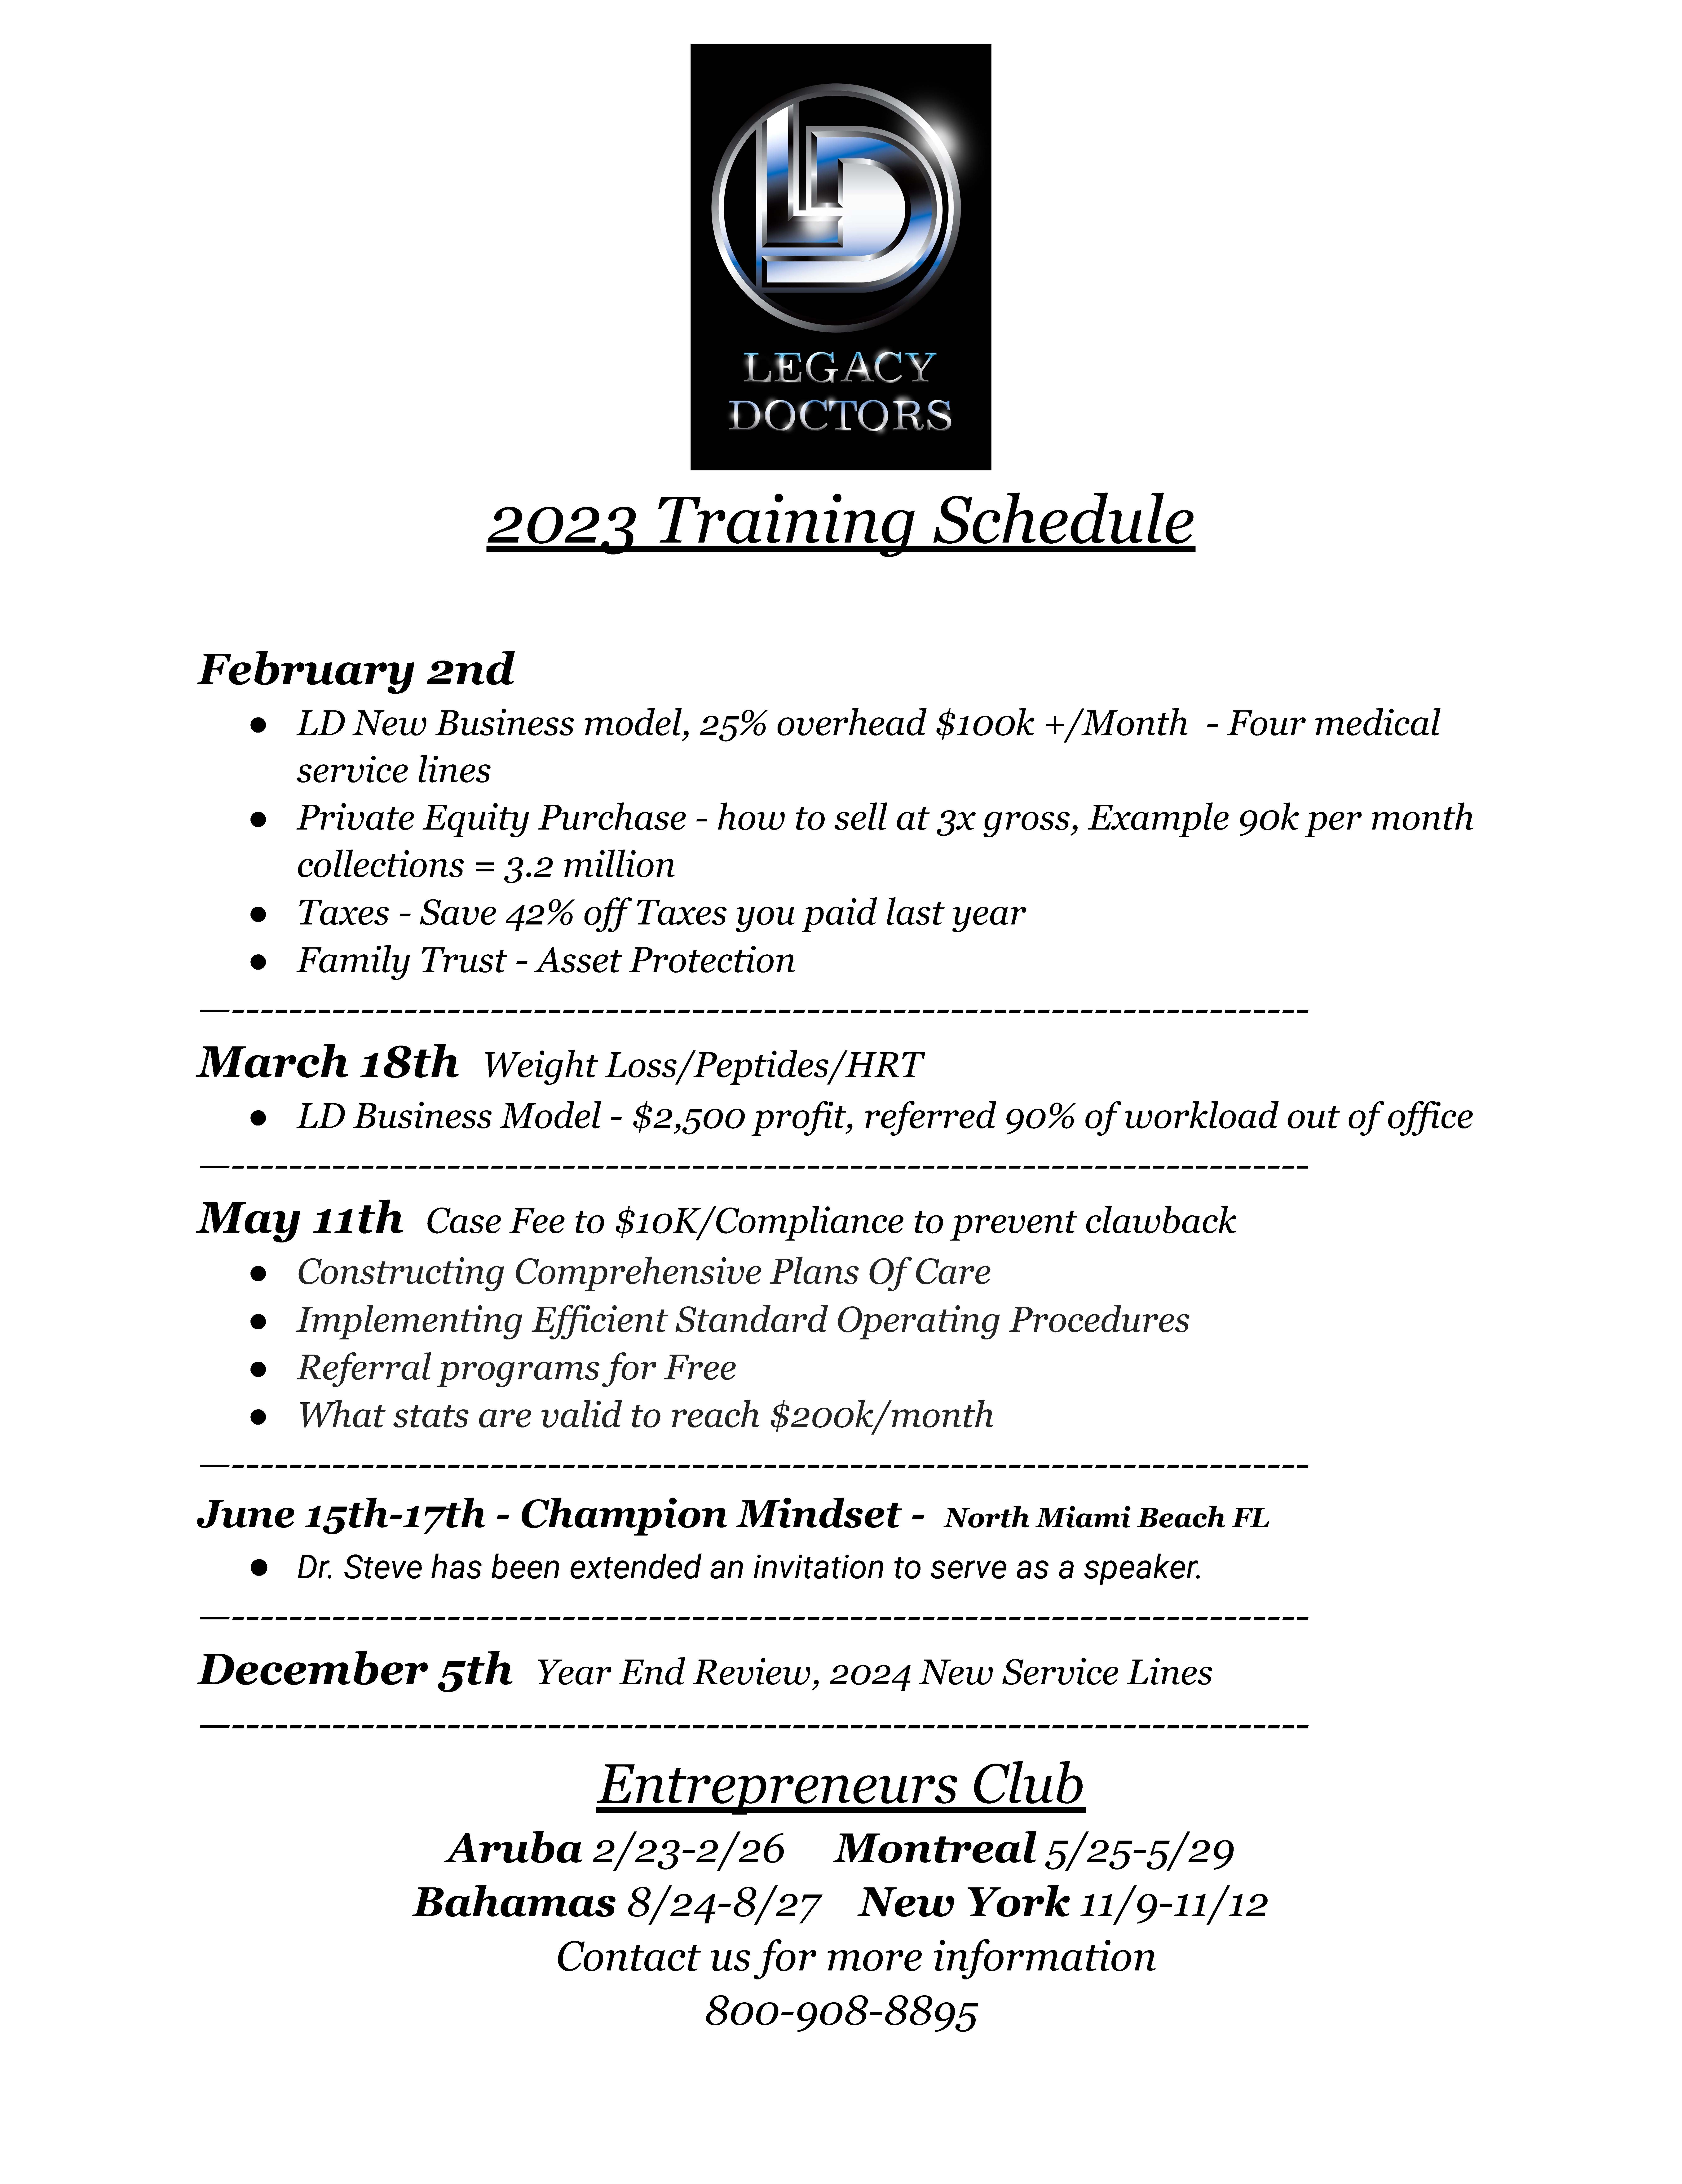 2023 Training Schedule-8